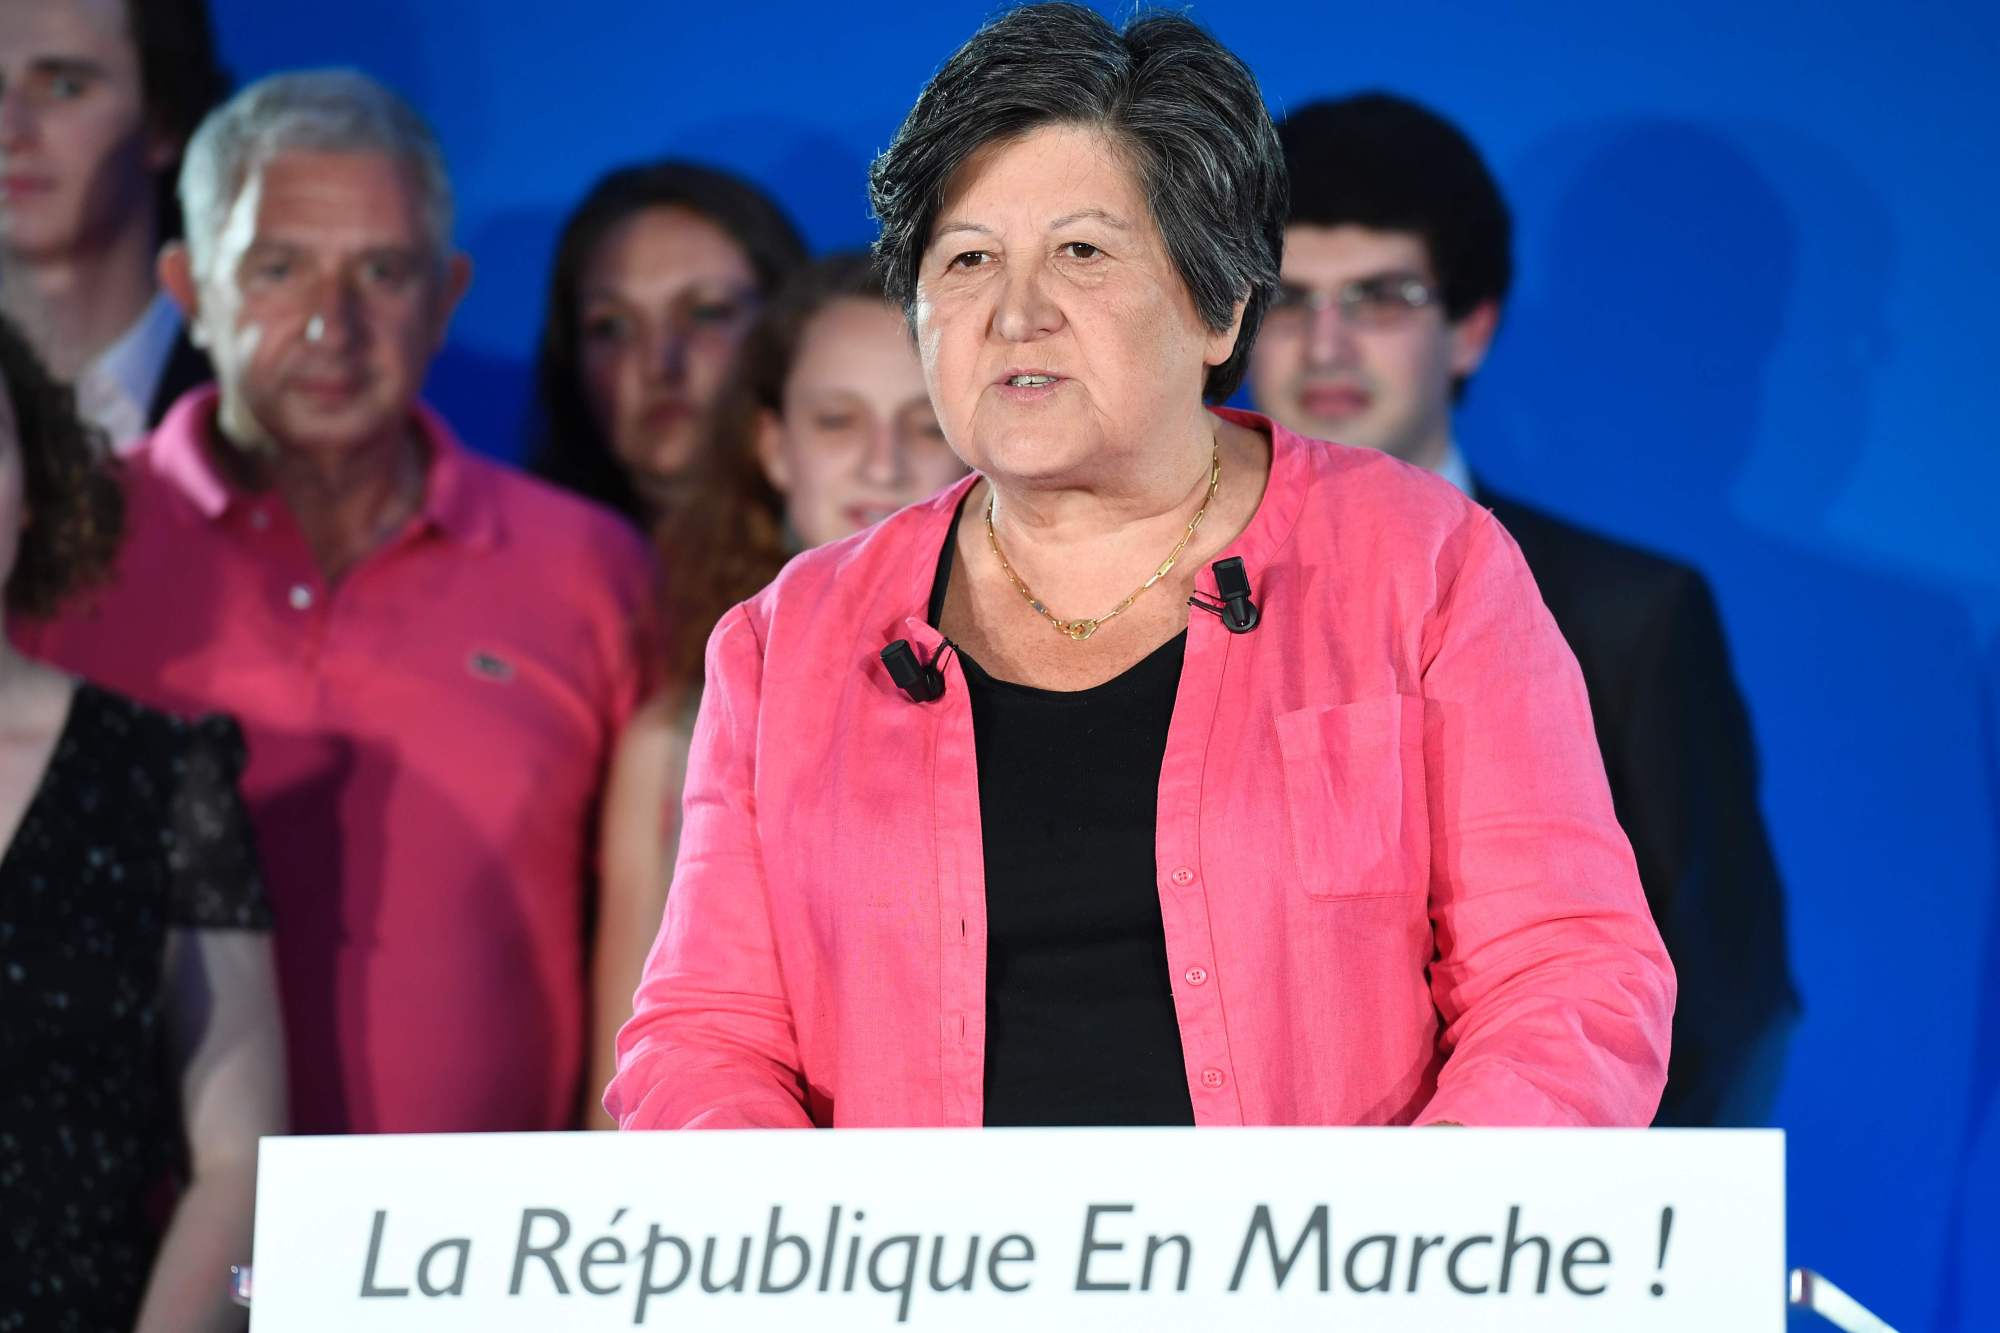 Los franceses tendrán una cifra récord de mujeres en el Parlamento